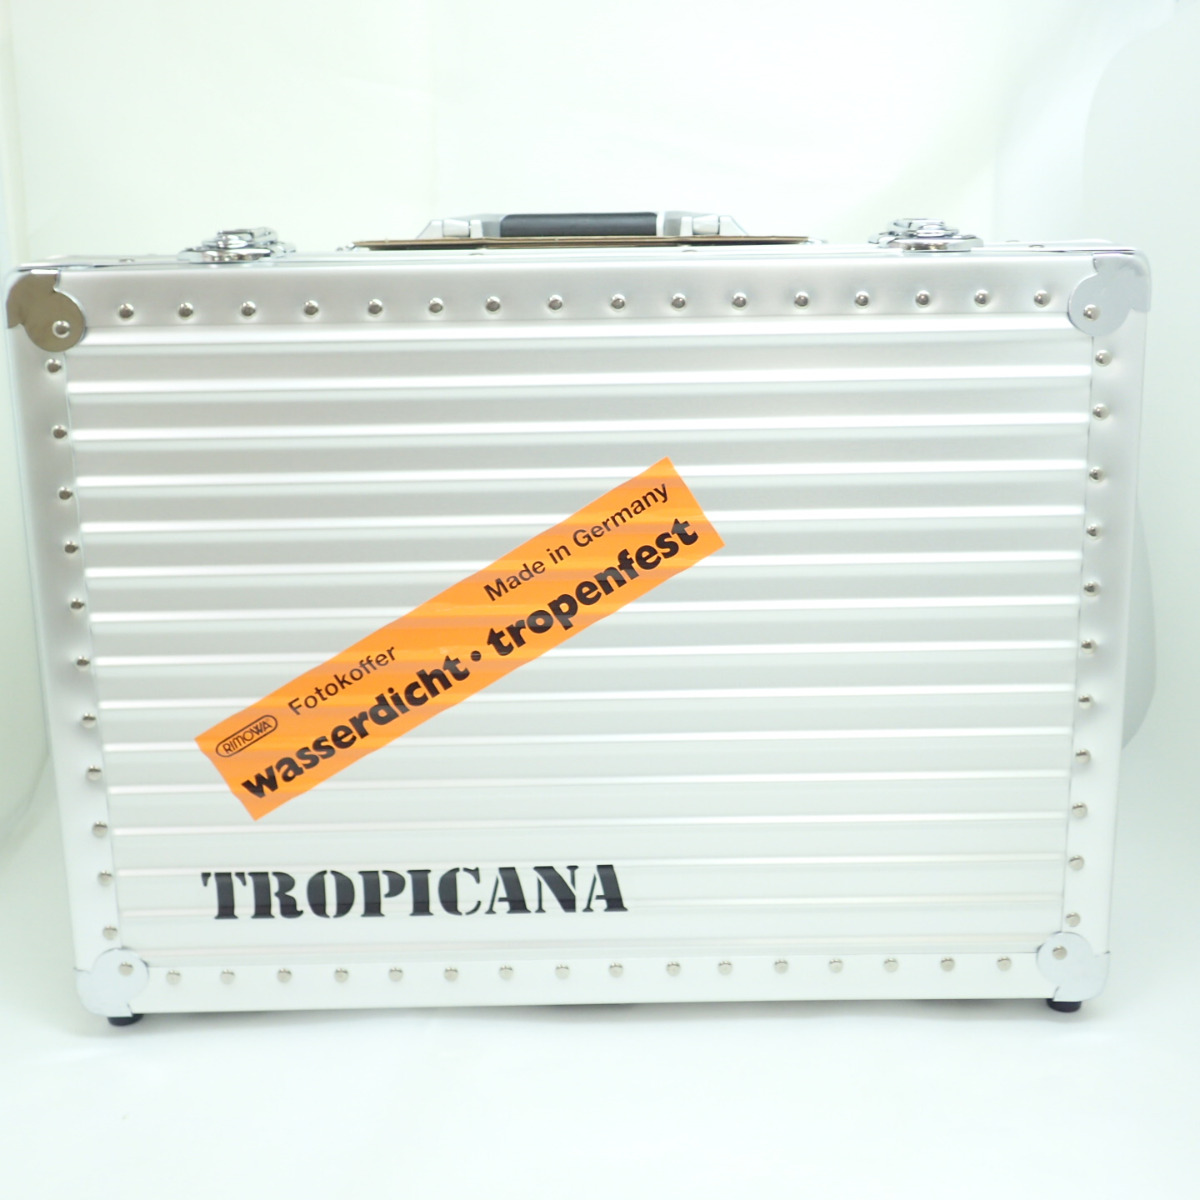 リモワの370.05 HANDKOFFER TROPICANA トロピカーナ ハンドケースの買取実績です。